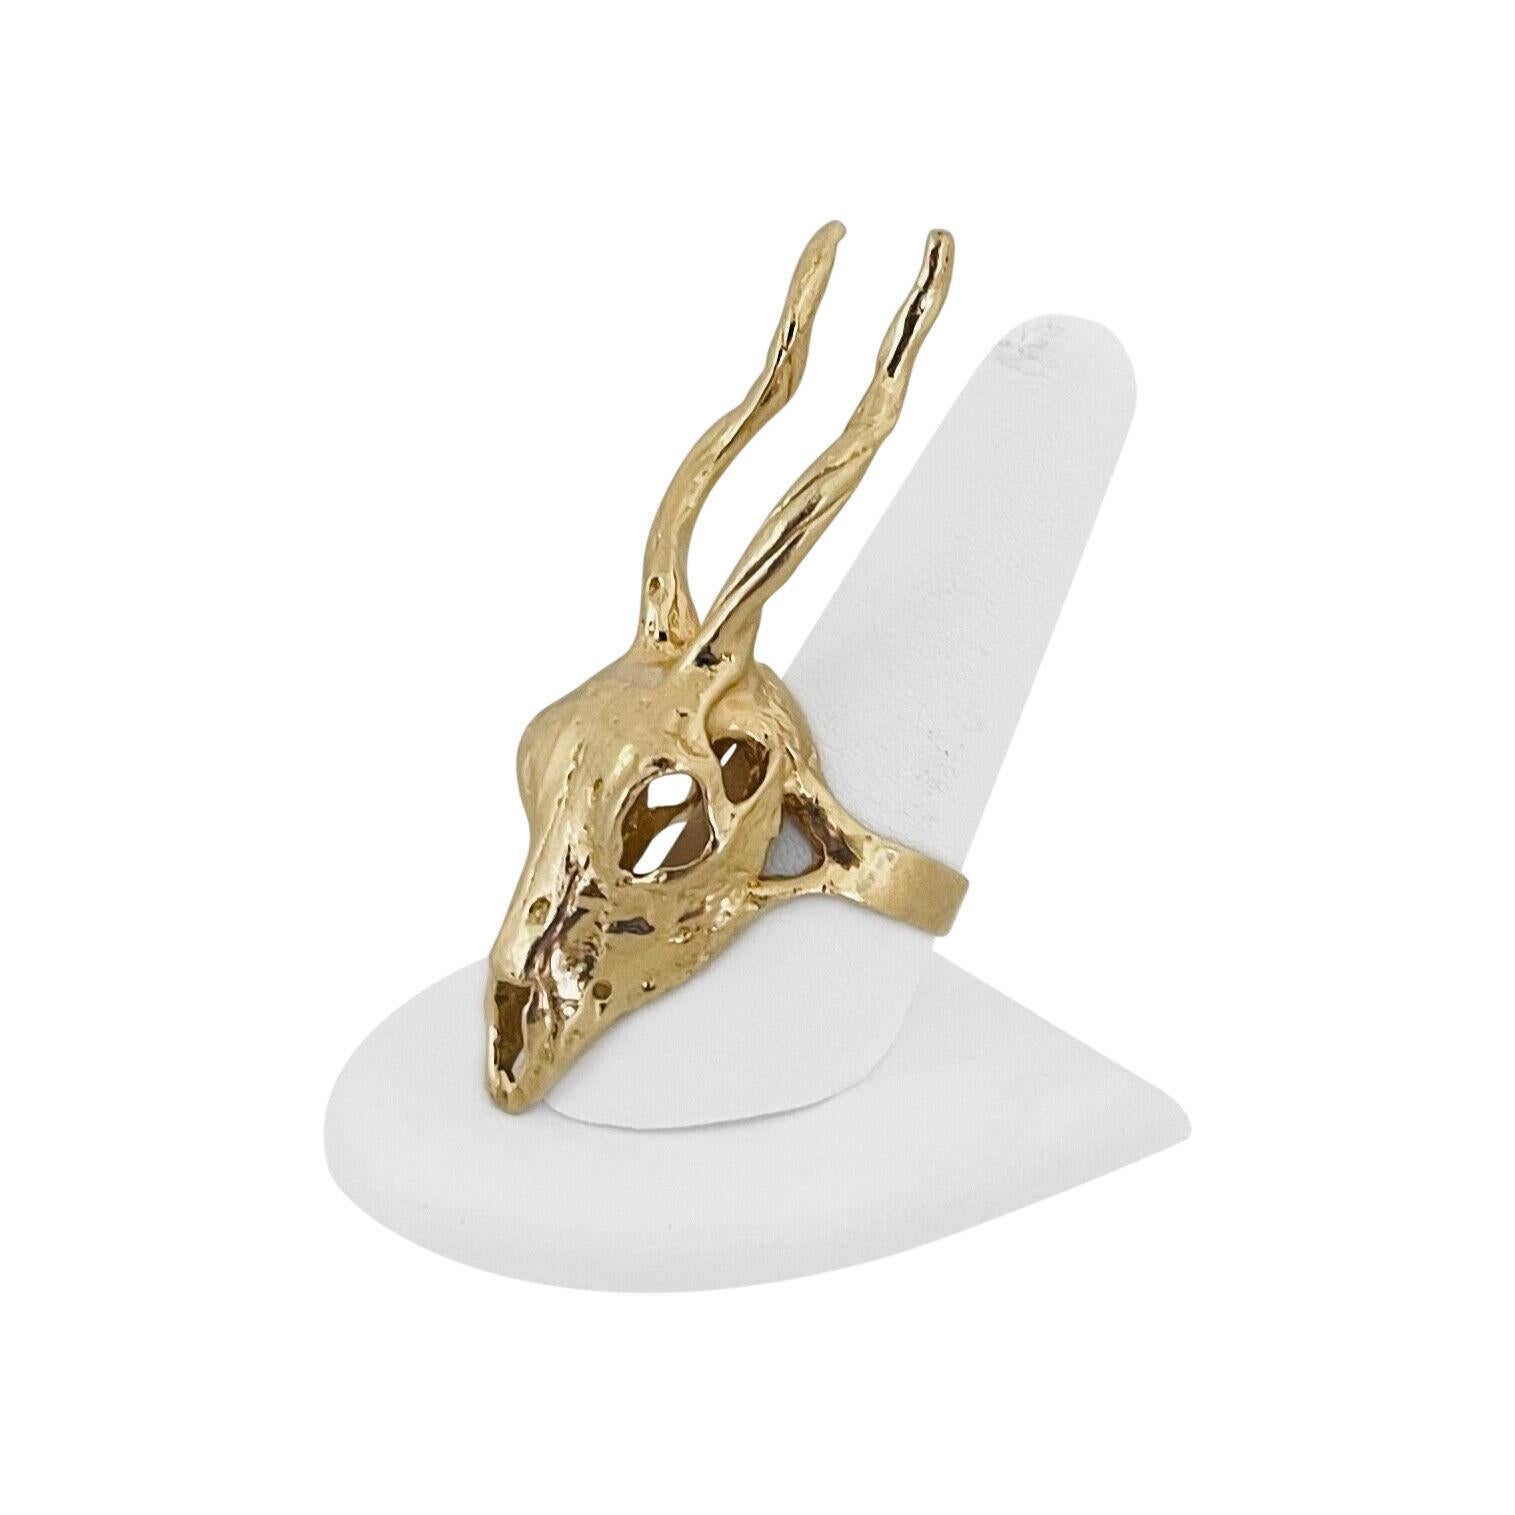 14k Yellow Gold 27g Solid Heavy Oversize Deer Antelope Horned Skull Ring Size 9

Condit :  Excellent état, nettoyé et poli par des professionnels.
Métal :  Or 14k (marqué et testé par des professionnels)
Poids :  27.1g
Dimensions du visage :  2.6